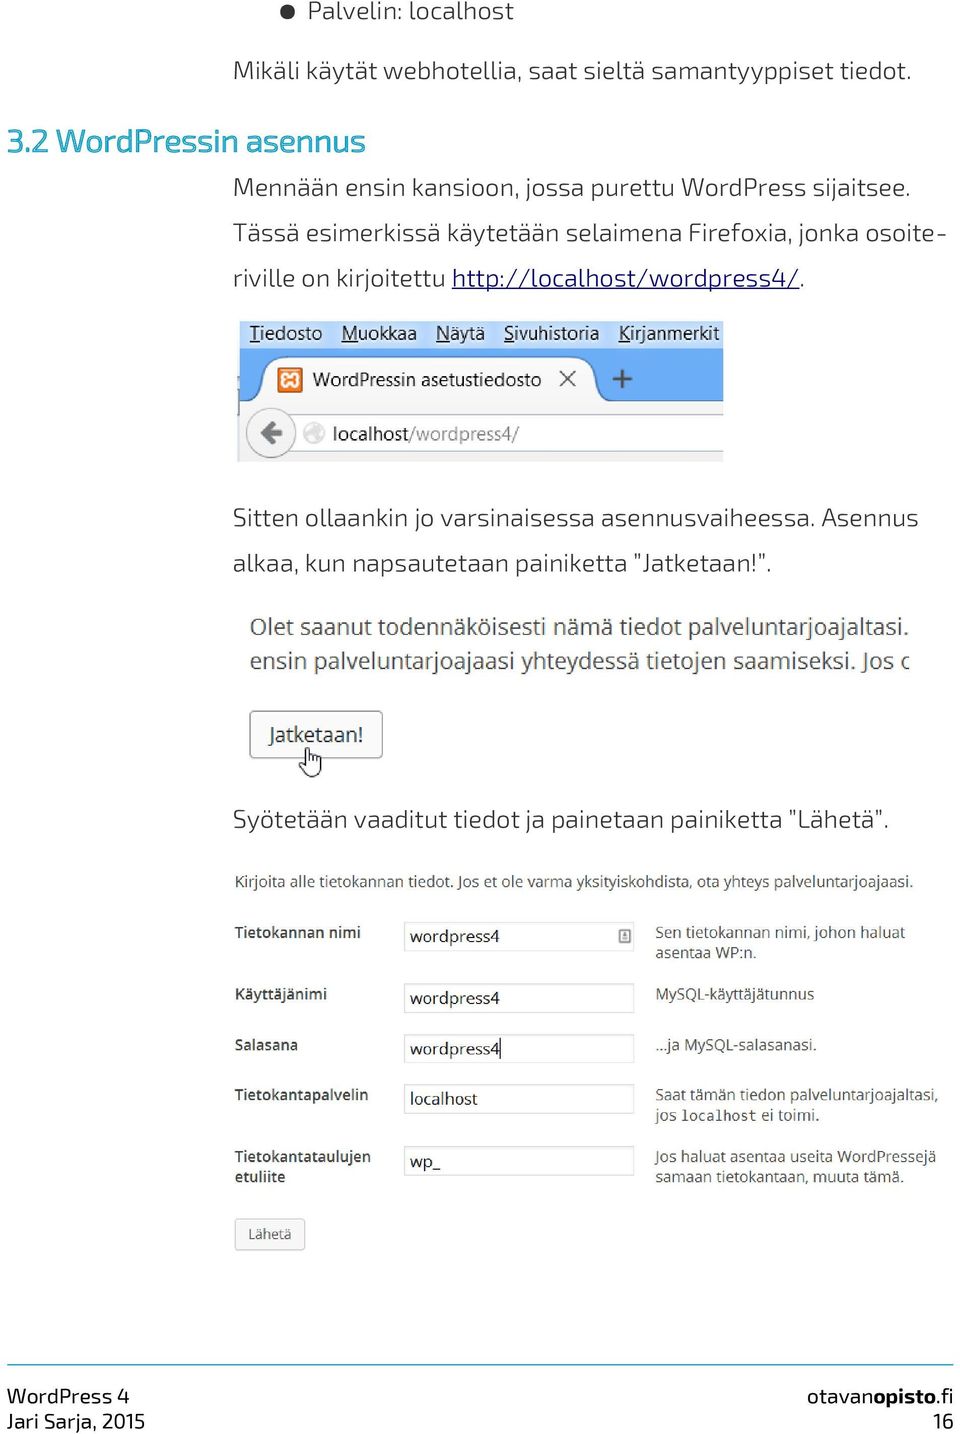 Tässä esimerkissä käytetään selaimena Firefoxia, jonka osoiteriville on kirjoitettu